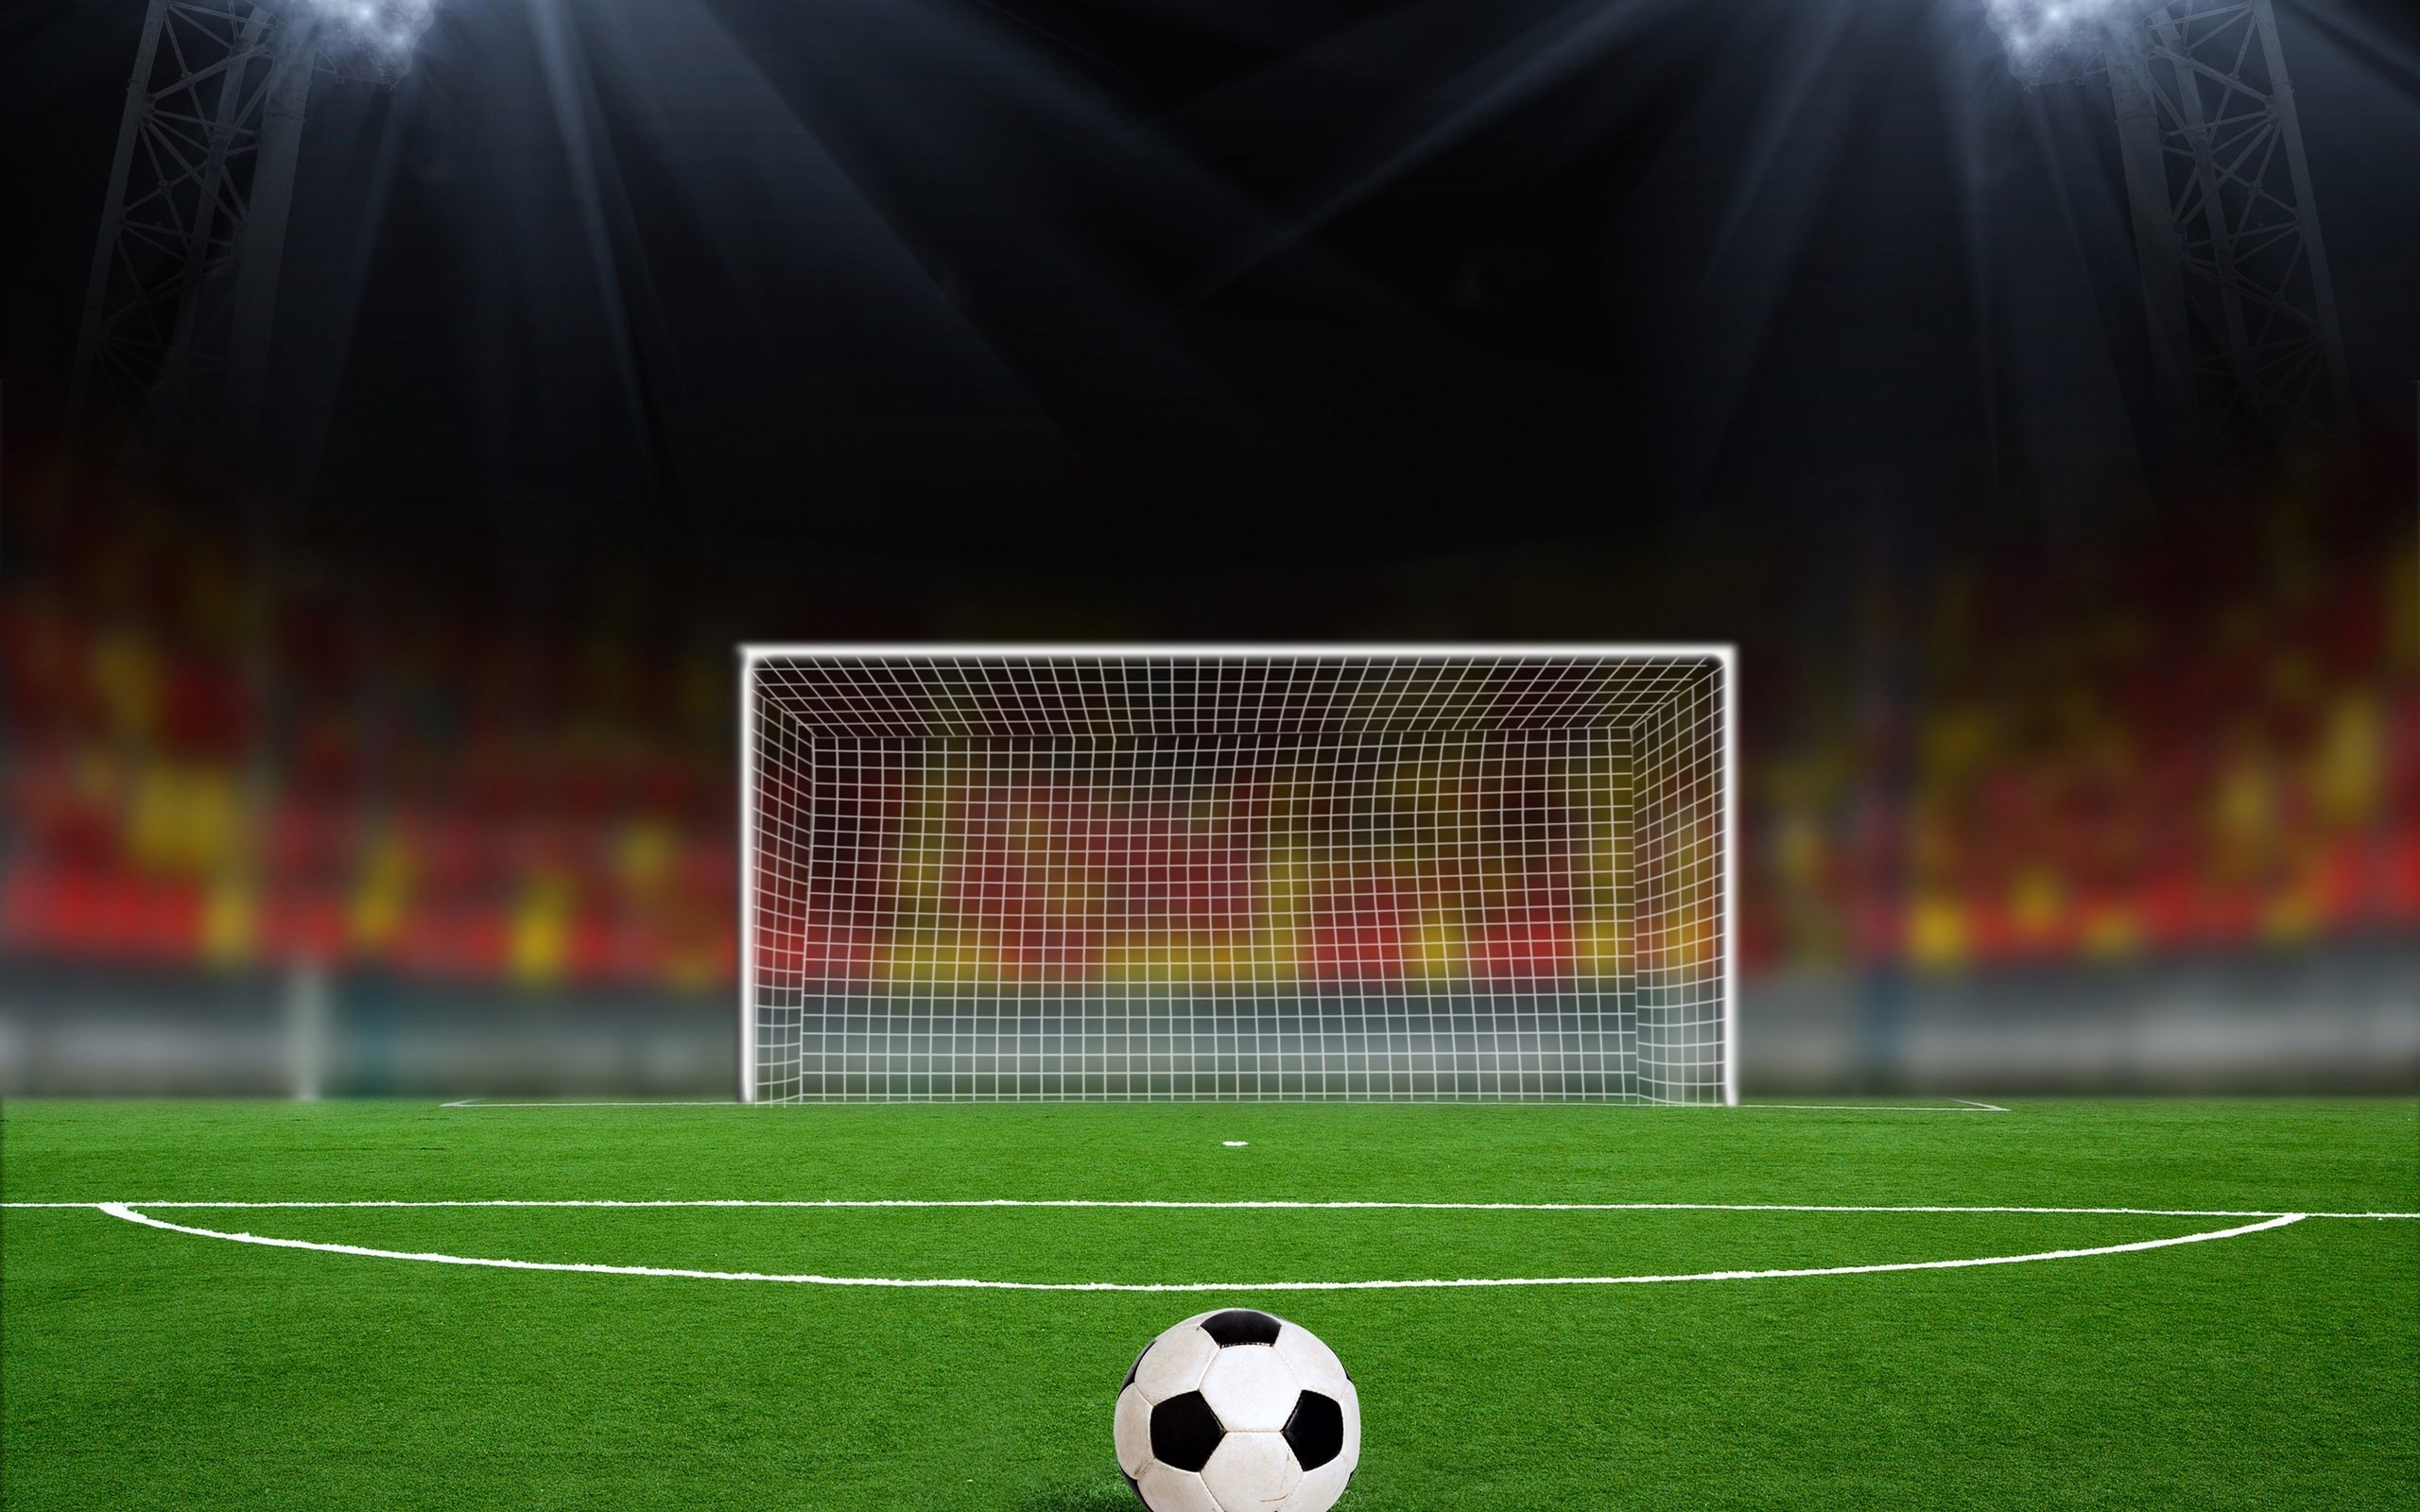 Football Field Background Wallpaper For Desktop Amp Mobile